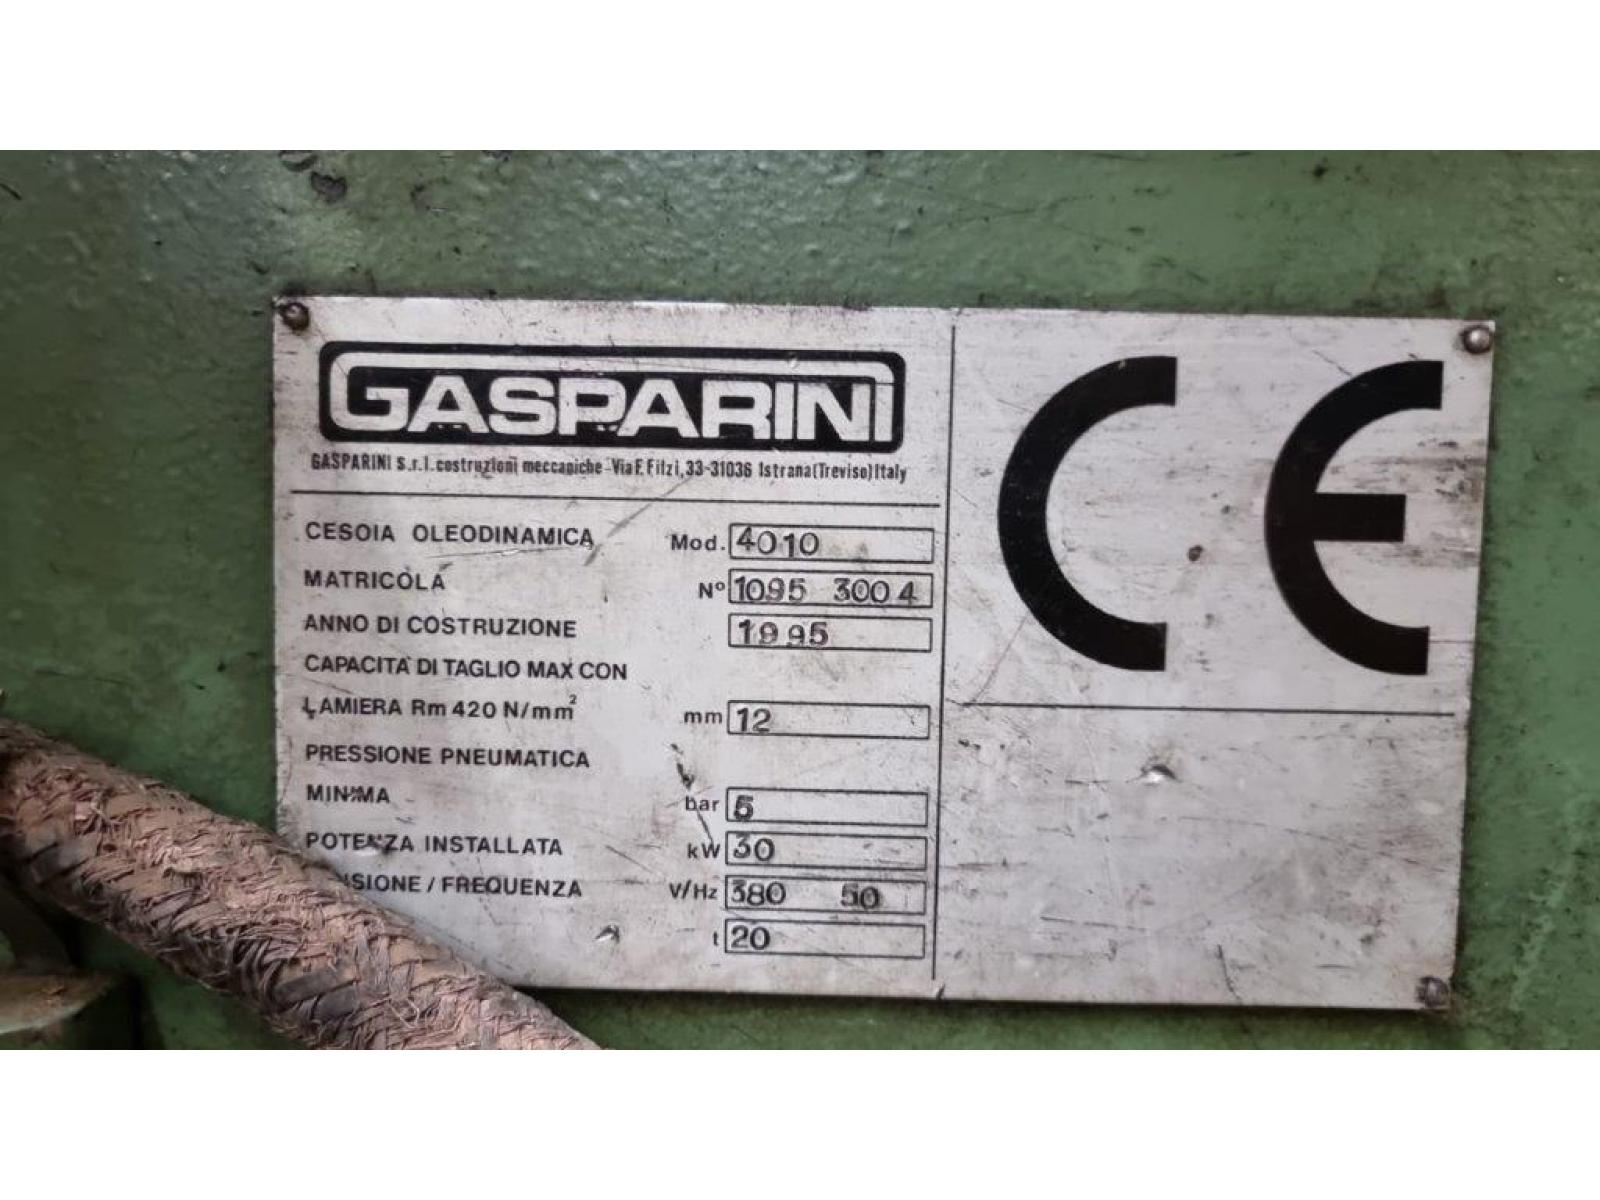 Cesoia Marca Gasparini Modello 4010